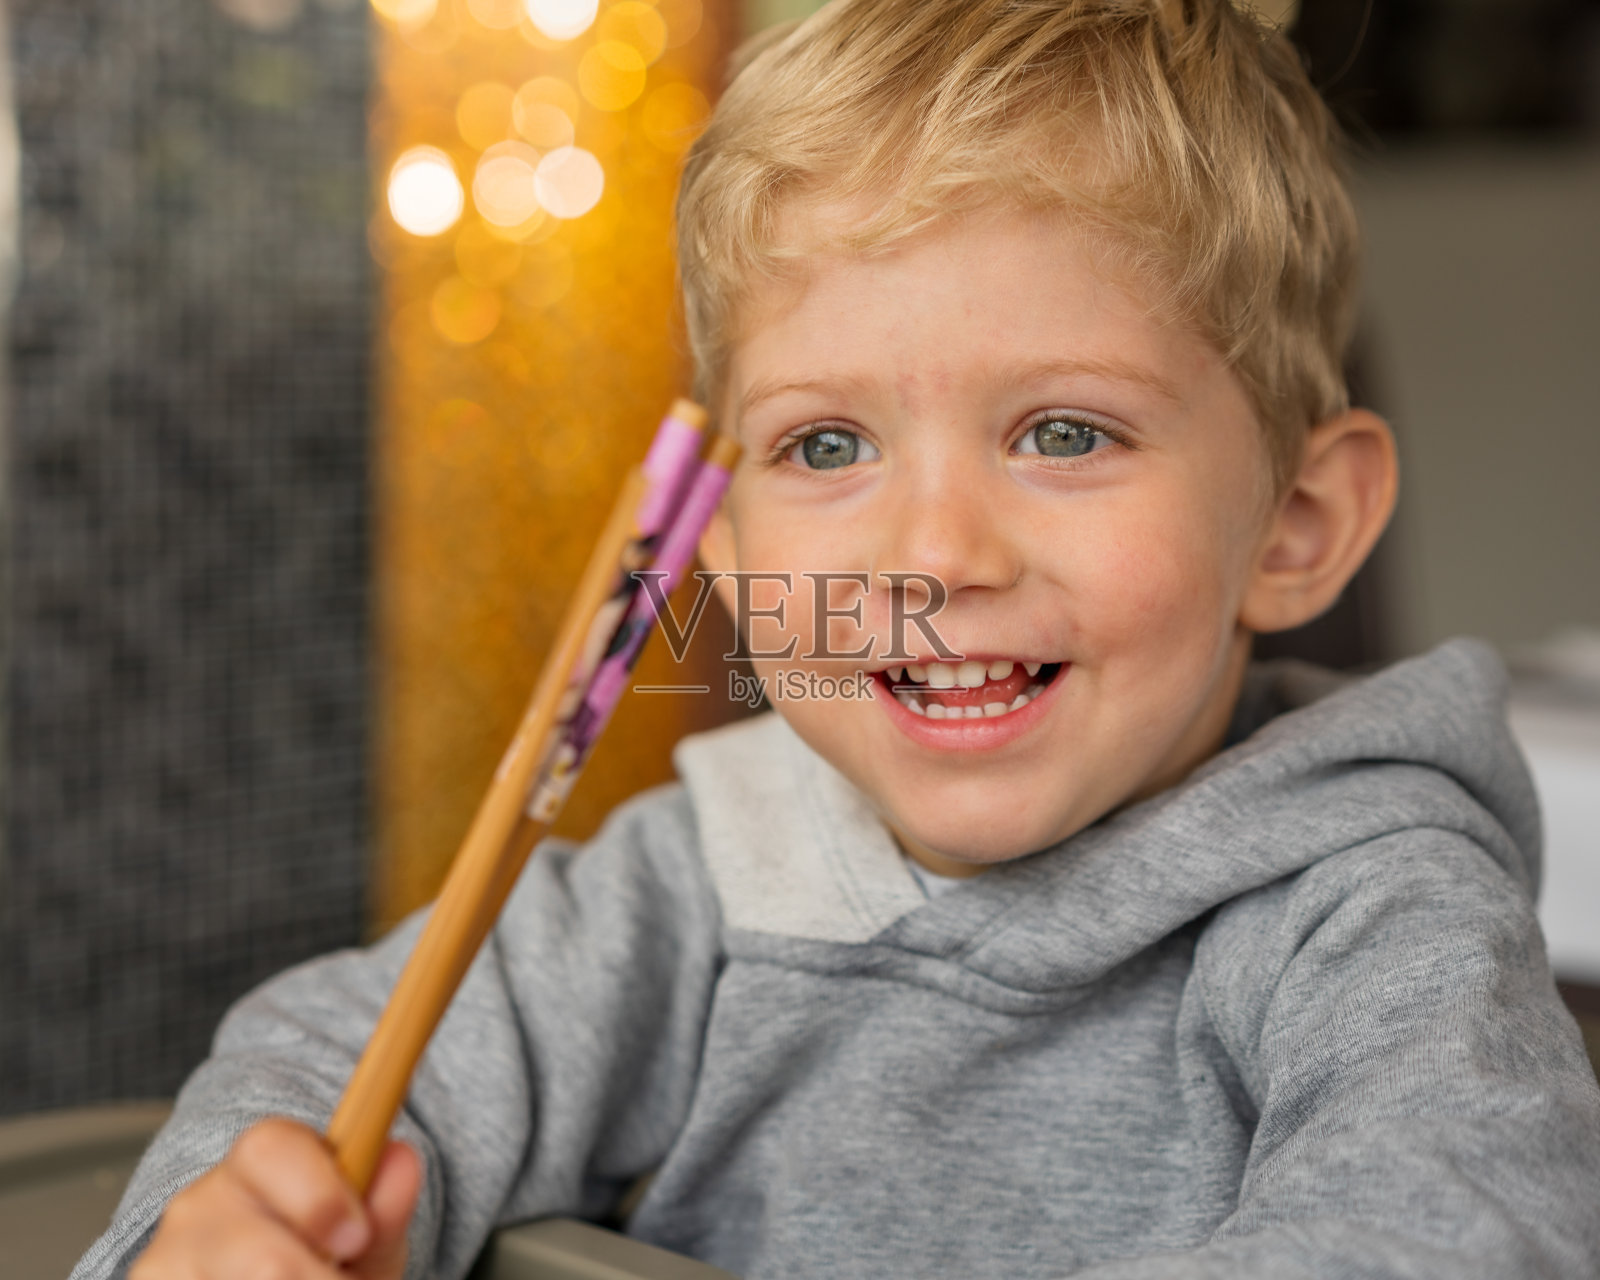 婴儿用筷子和微笑幸福照片摄影图片